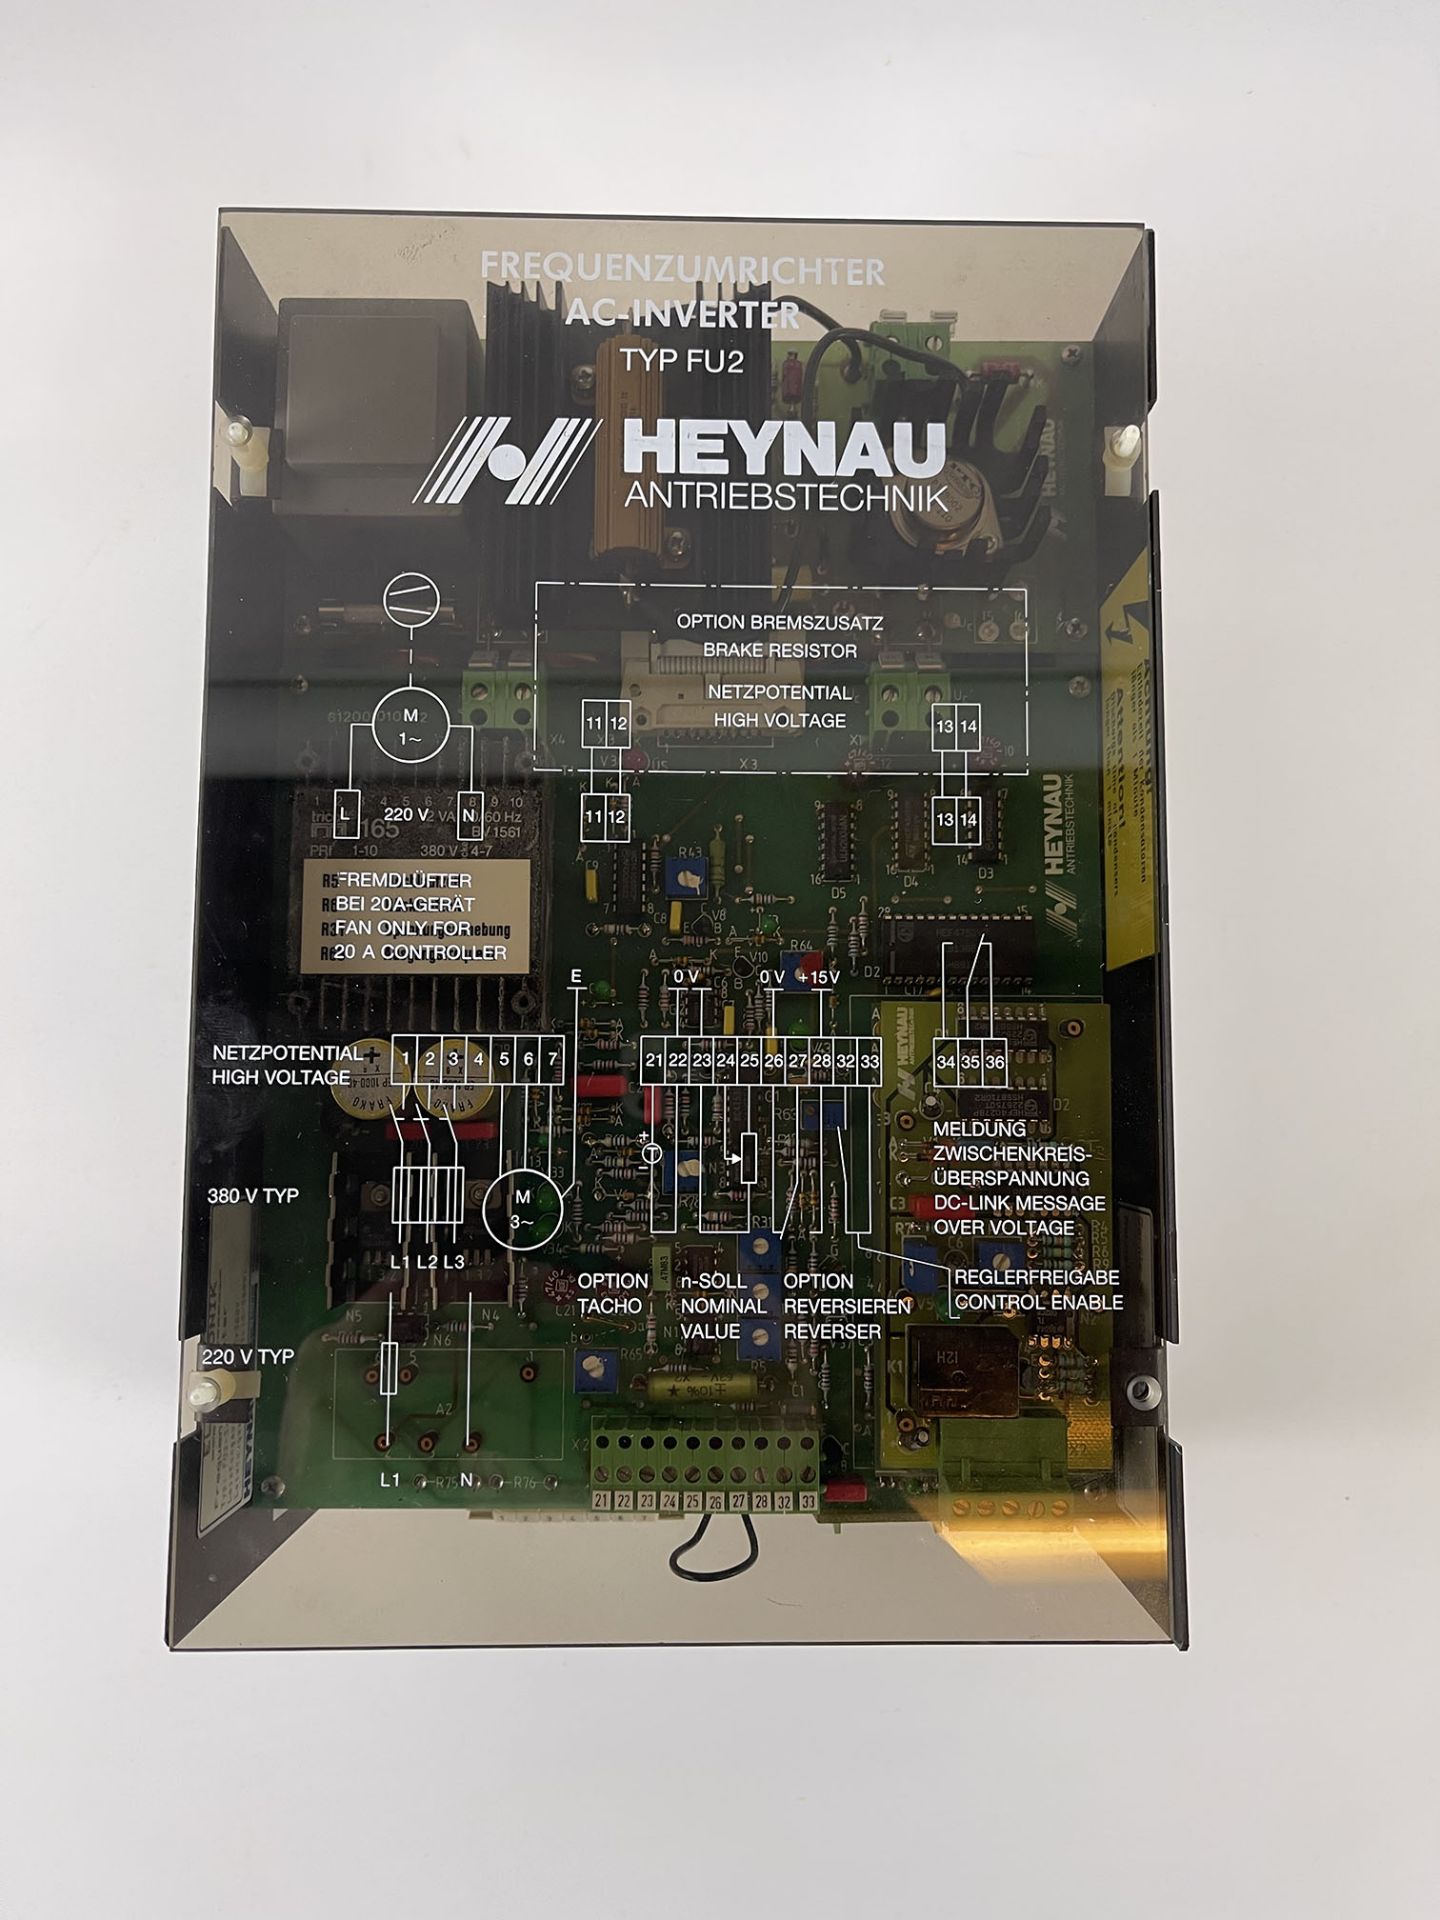 Heynau AC-inverter TYP FU2 - Image 2 of 4